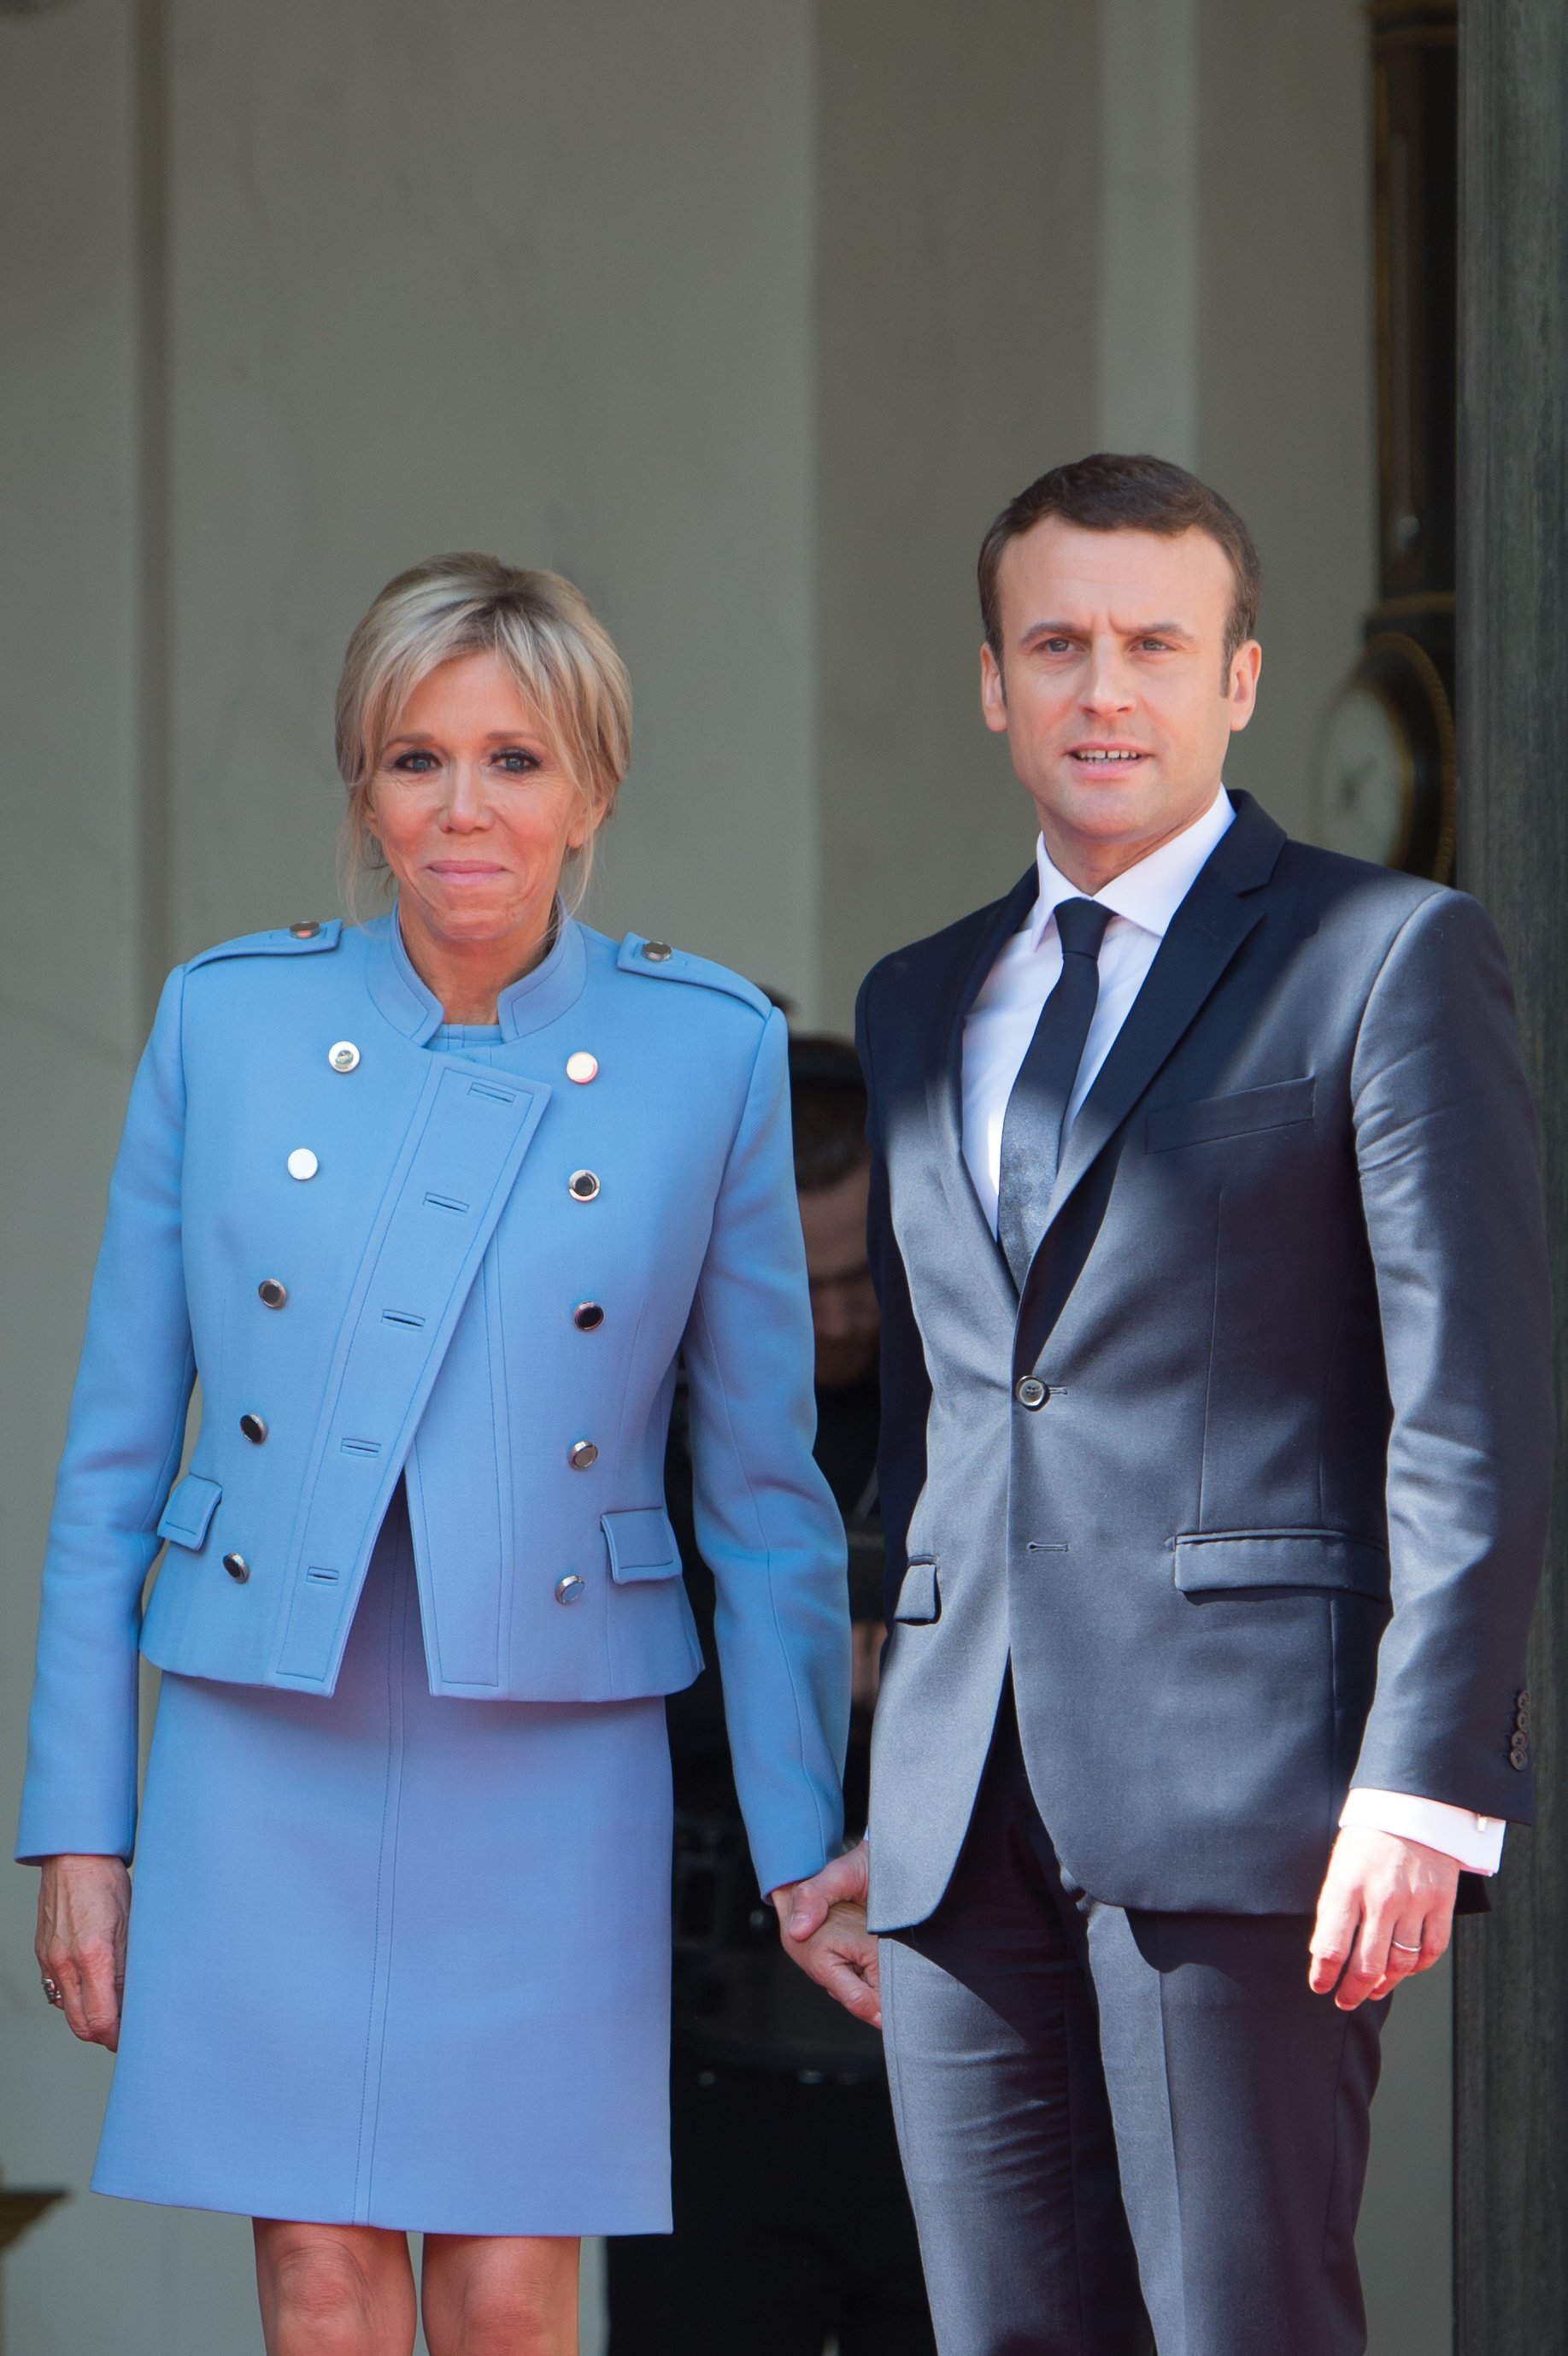 Le Président français Emmanuel Macron pose avec son épouse Brigitte Macron au Palais présidentiel de l'Elysée le 14 mai 2017 à Paris, France. | Photo : Getty Images